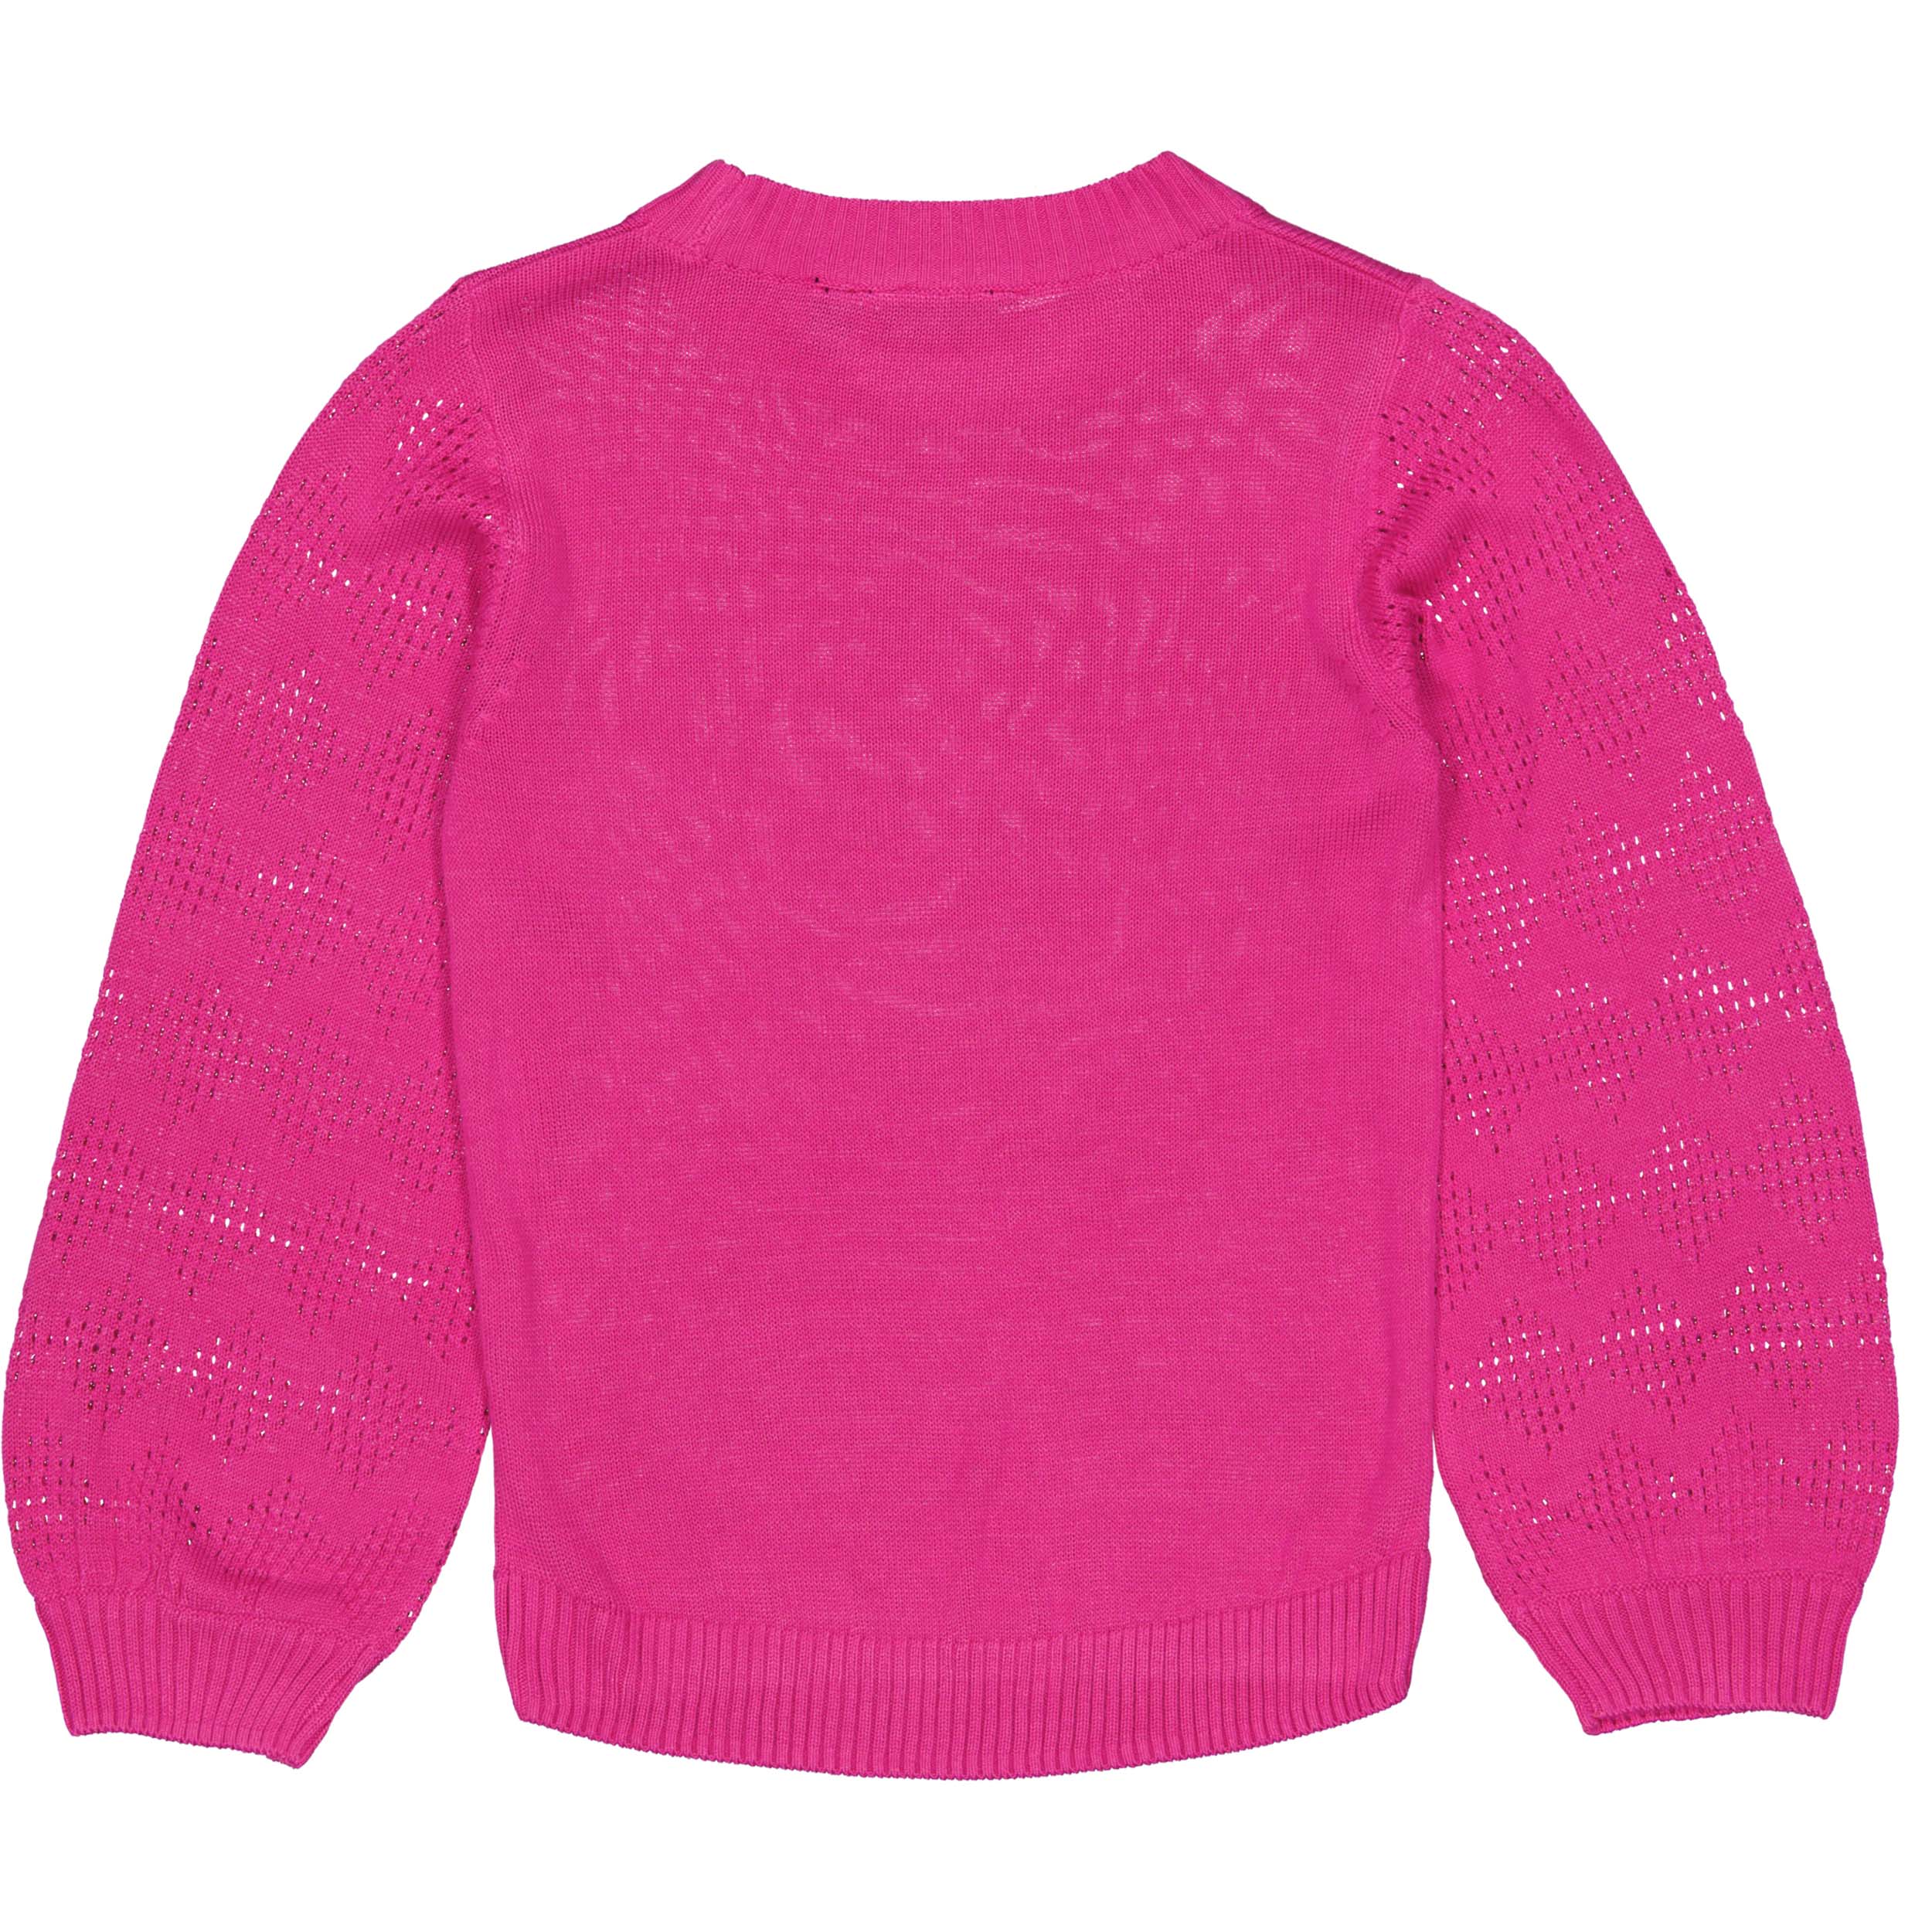 Meisjes Pullover RENATEW221 van Quapi in de kleur Pink Magenta in maat 98-104.